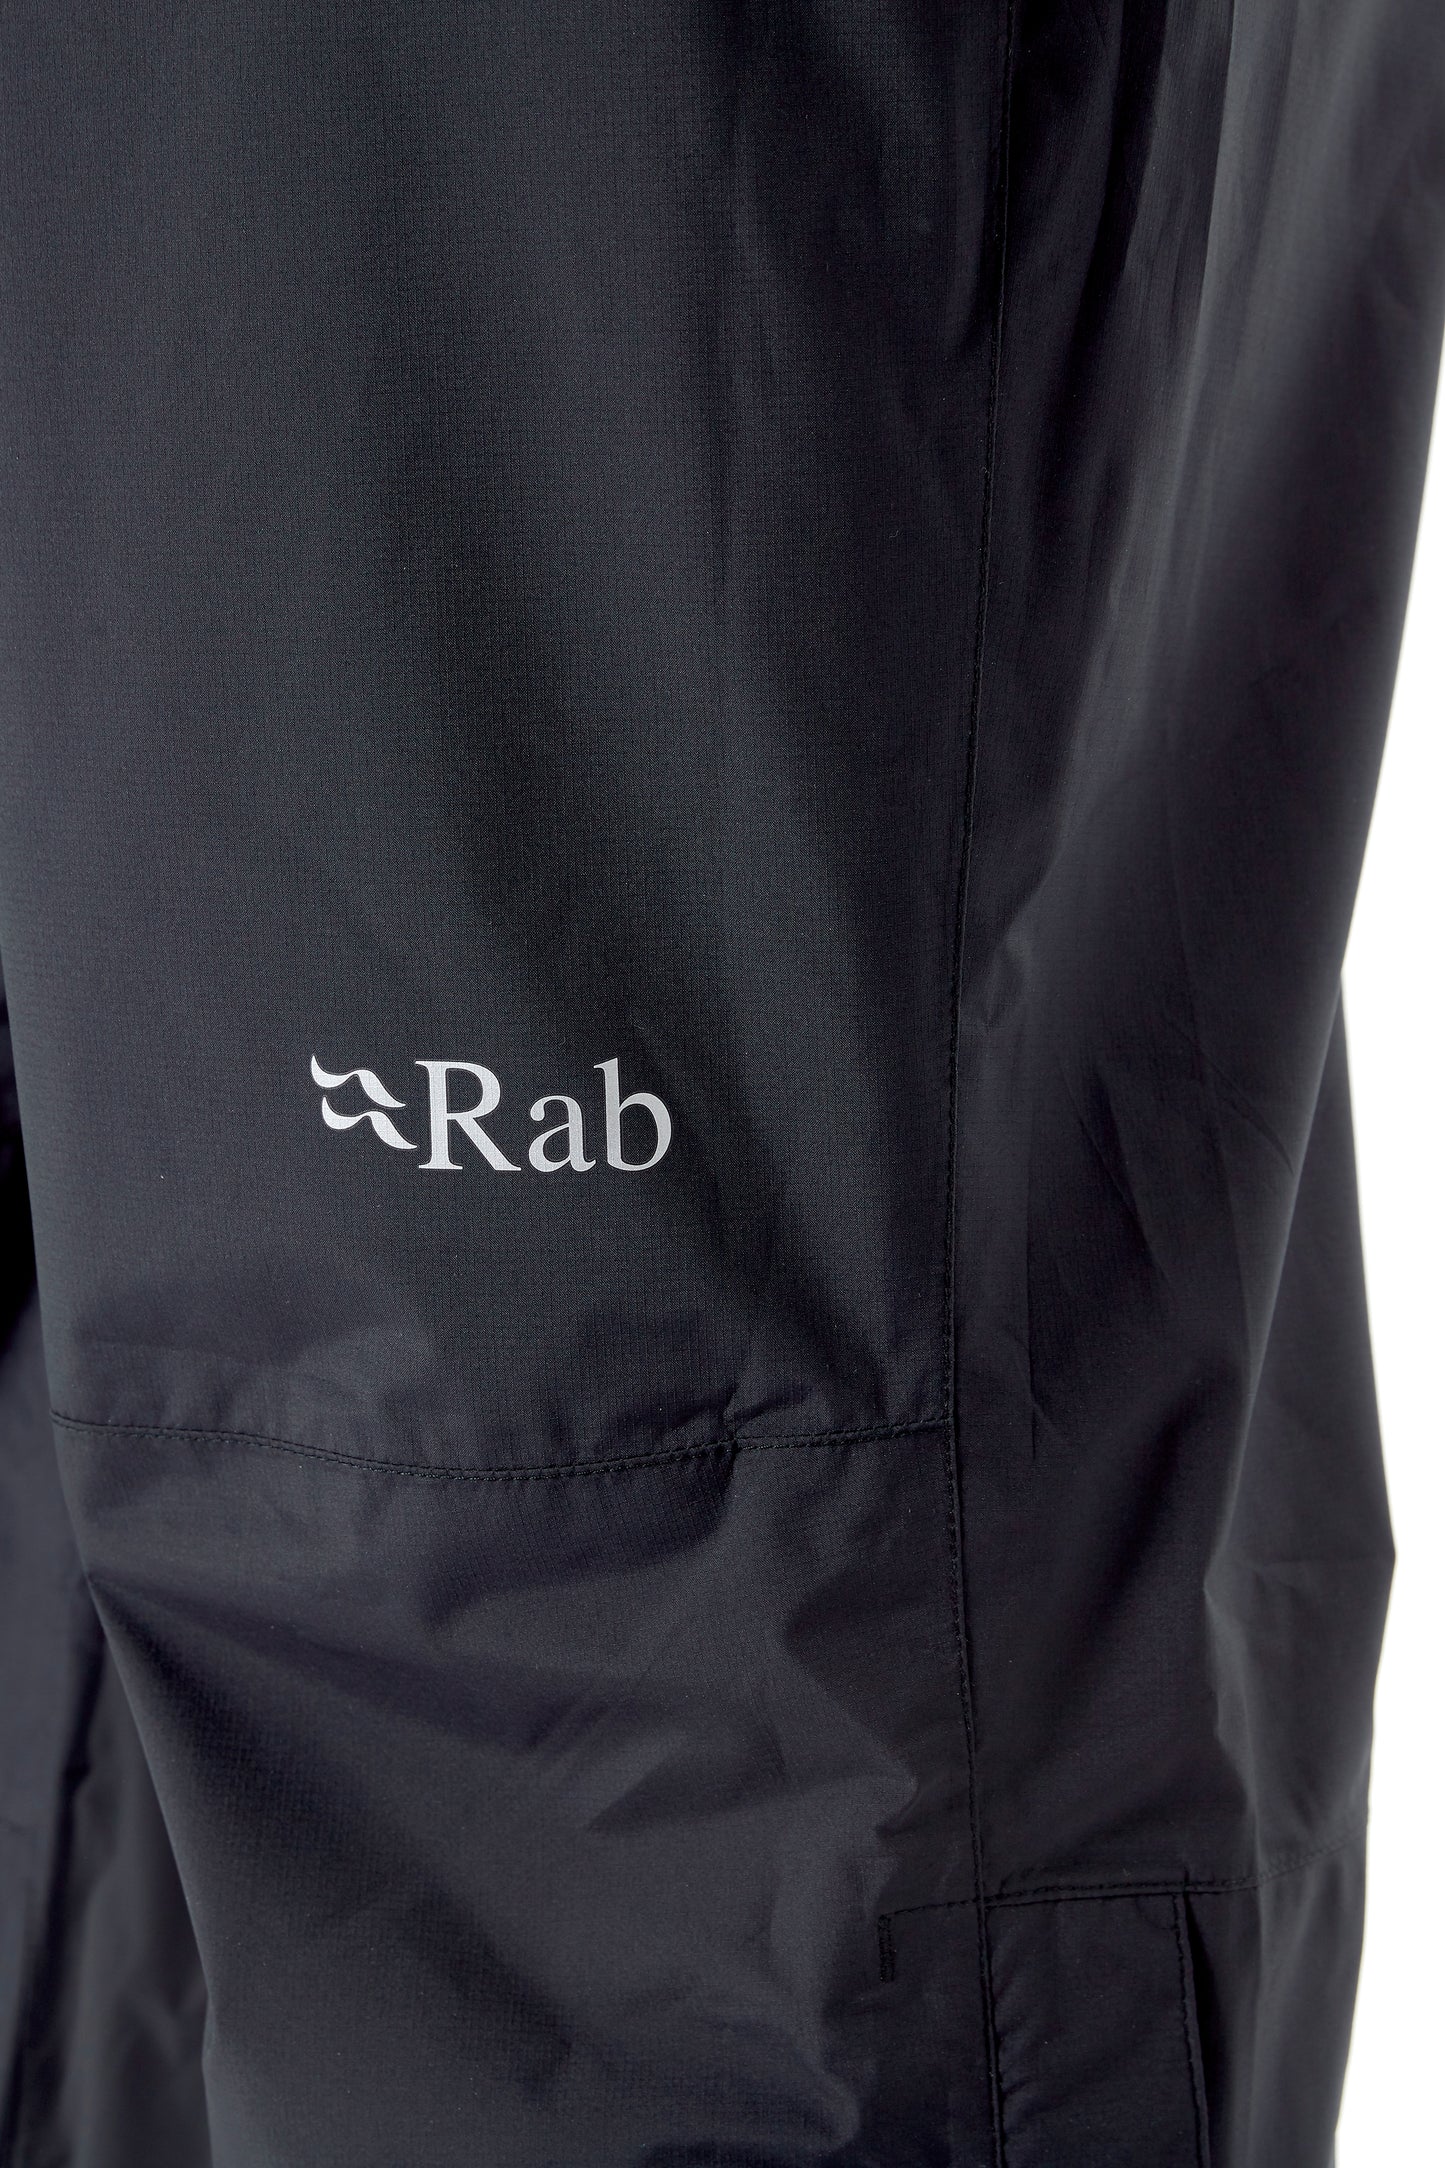 Rab / Downpour Eco Pants